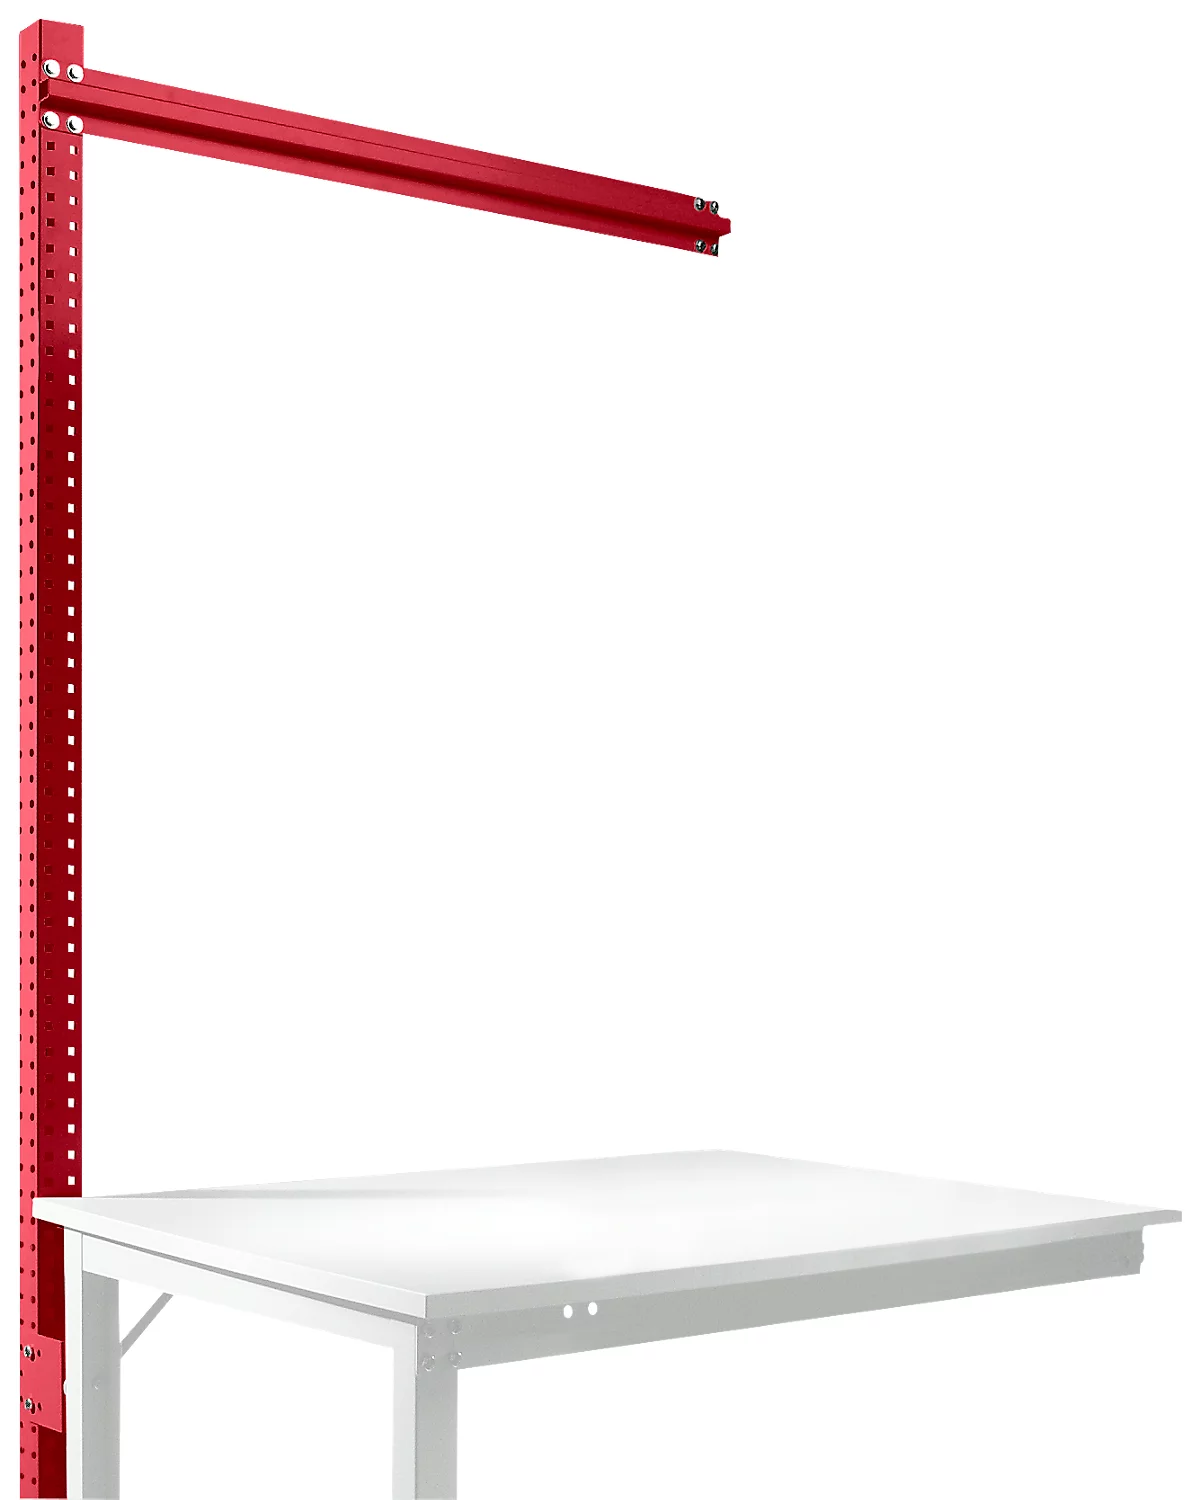 Estructura pórtica adicional, Mesa de extensión SPEZIAL sistema mesa de trabajo/banco de trabajo UNIVERSAL/PROFI, 1250 mm, rojo rubí